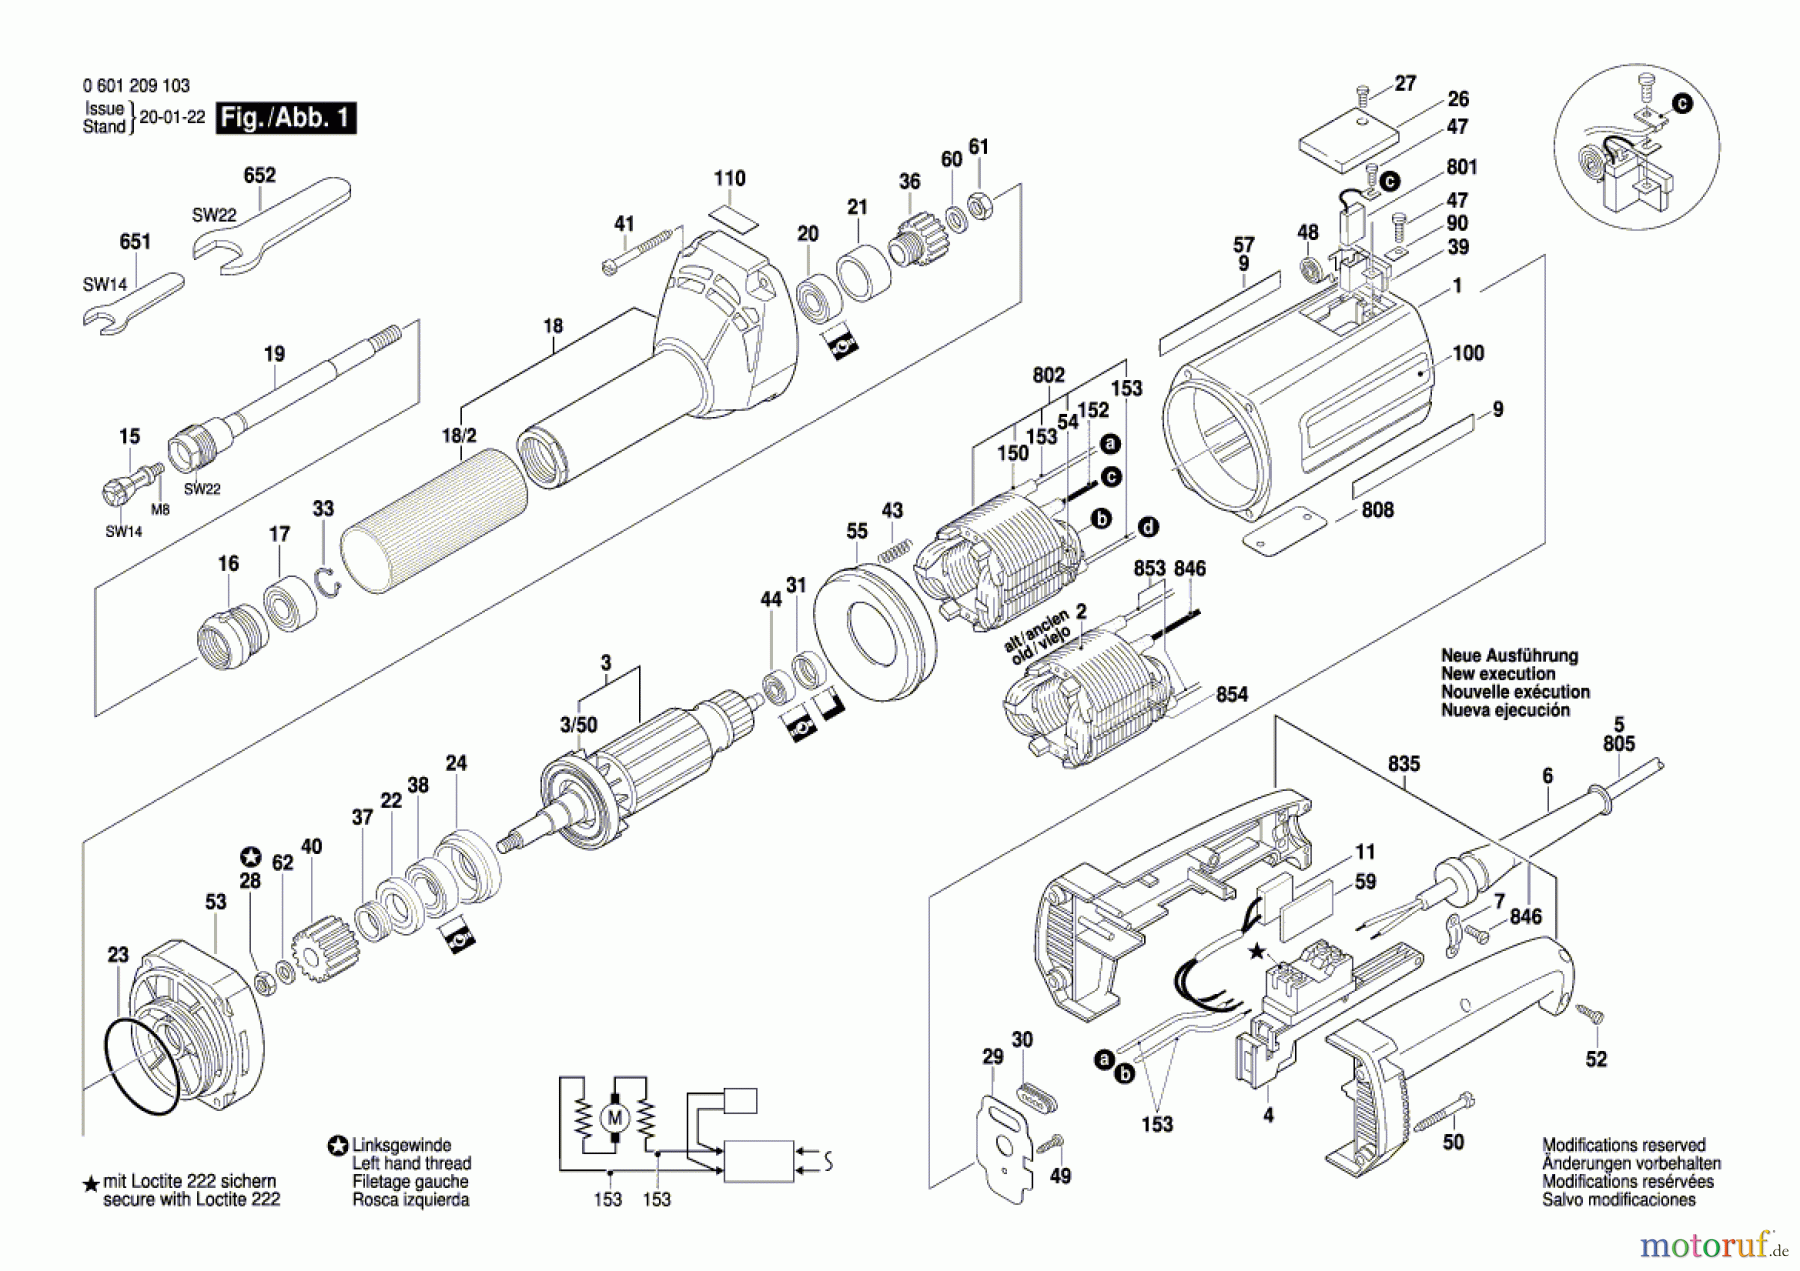  Bosch Werkzeug Geradschleifer GGS 16 Seite 1